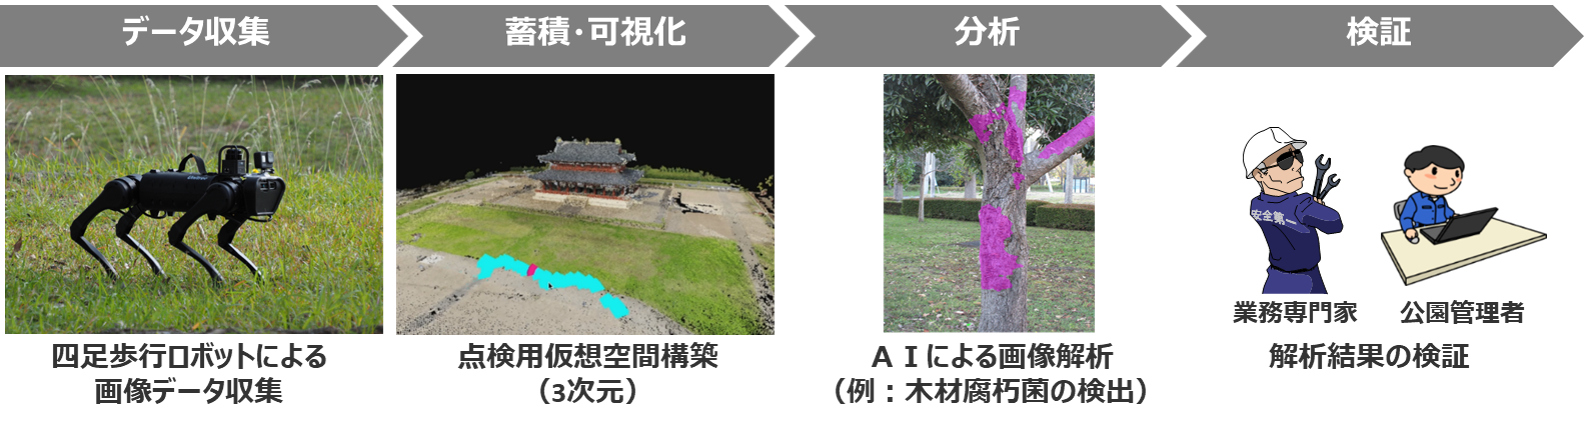 四足歩行ロボットを活用した「自動巡回点検検証」のイメージ